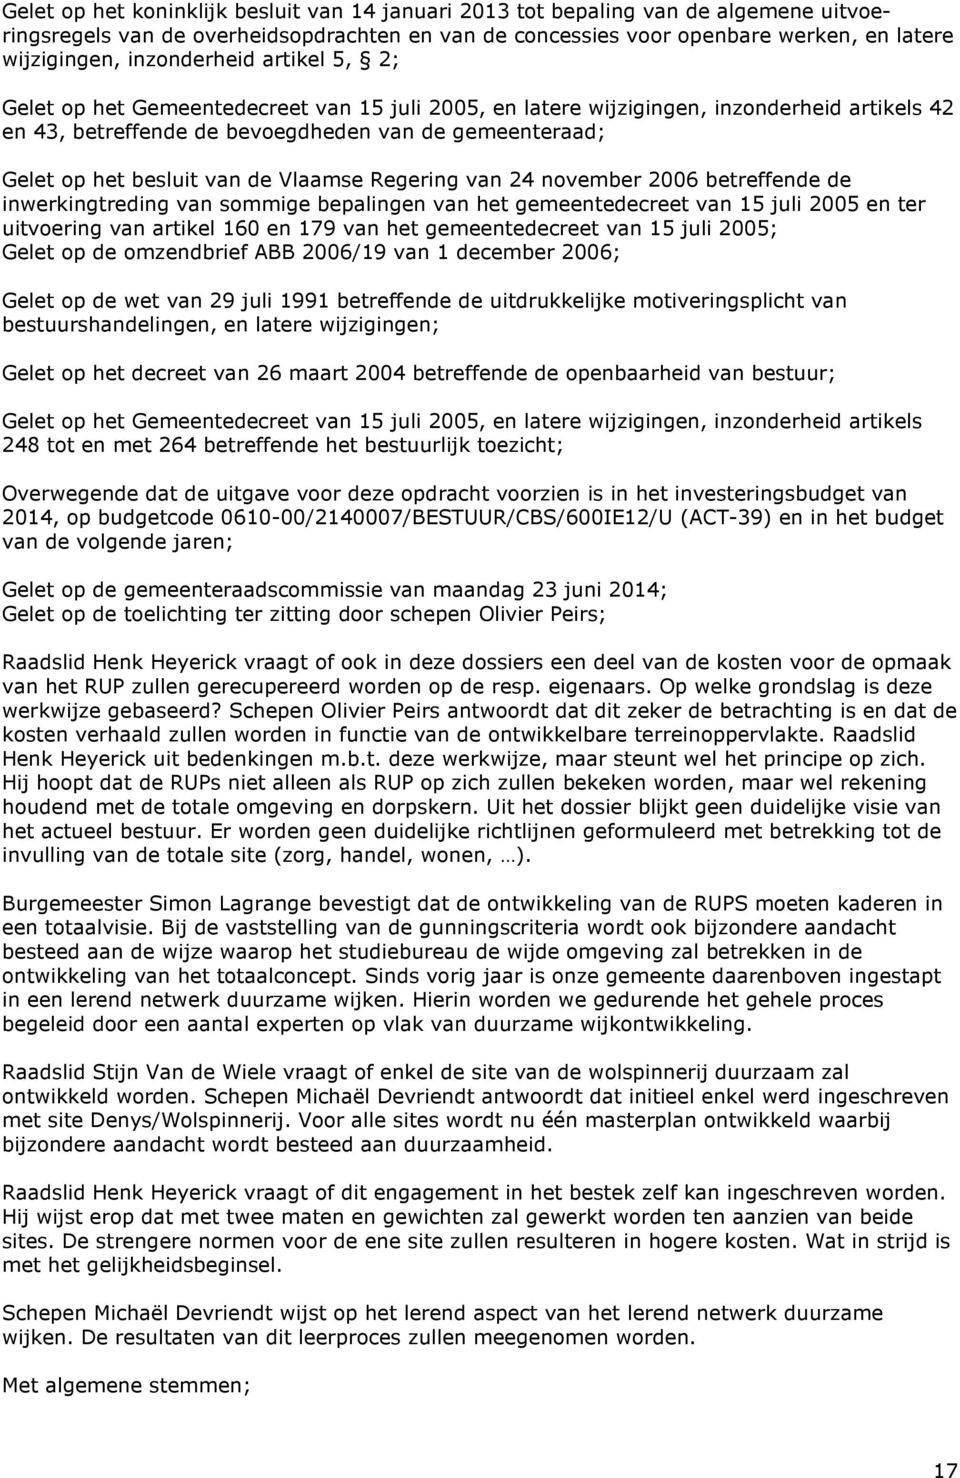 van de Vlaamse Regering van 24 november 2006 betreffende de inwerkingtreding van sommige bepalingen van het gemeentedecreet van 15 juli 2005 en ter uitvoering van artikel 160 en 179 van het